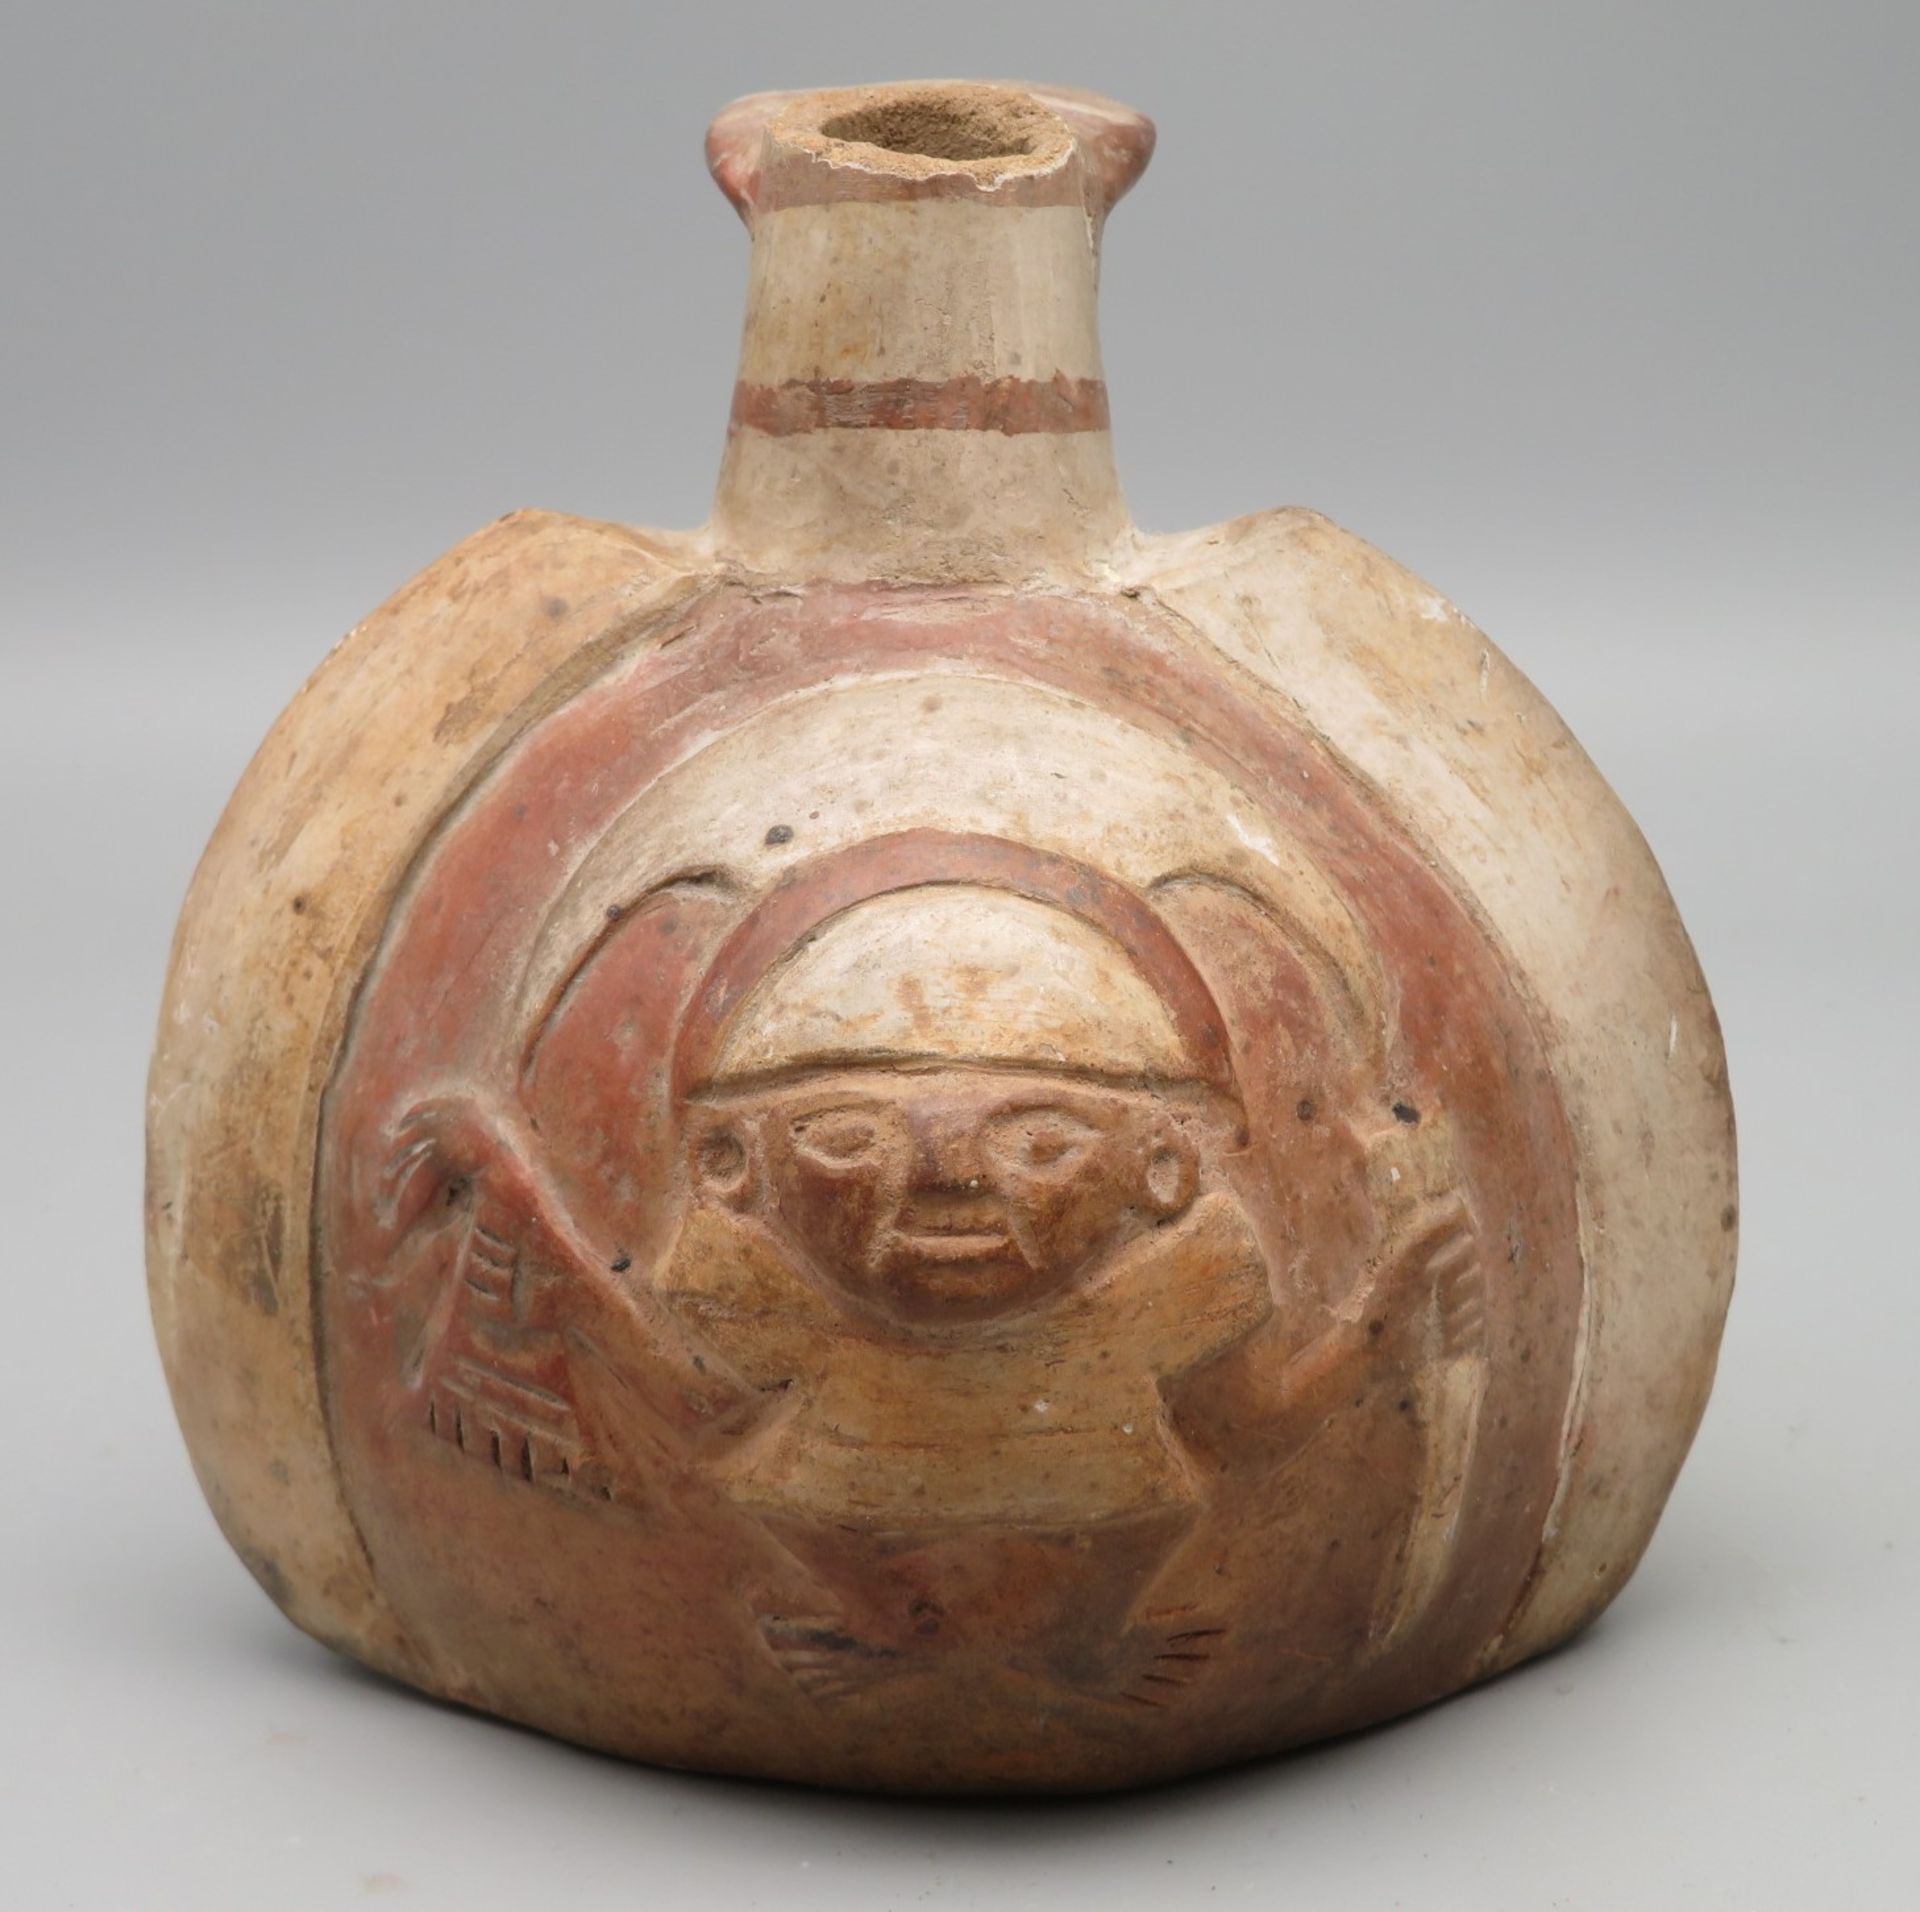 Flasche/Gefäß, Südamerika, wohl Peru, Präkolumbisch, antik, Ton mit reliefiertem Motiv, Bruchstelle